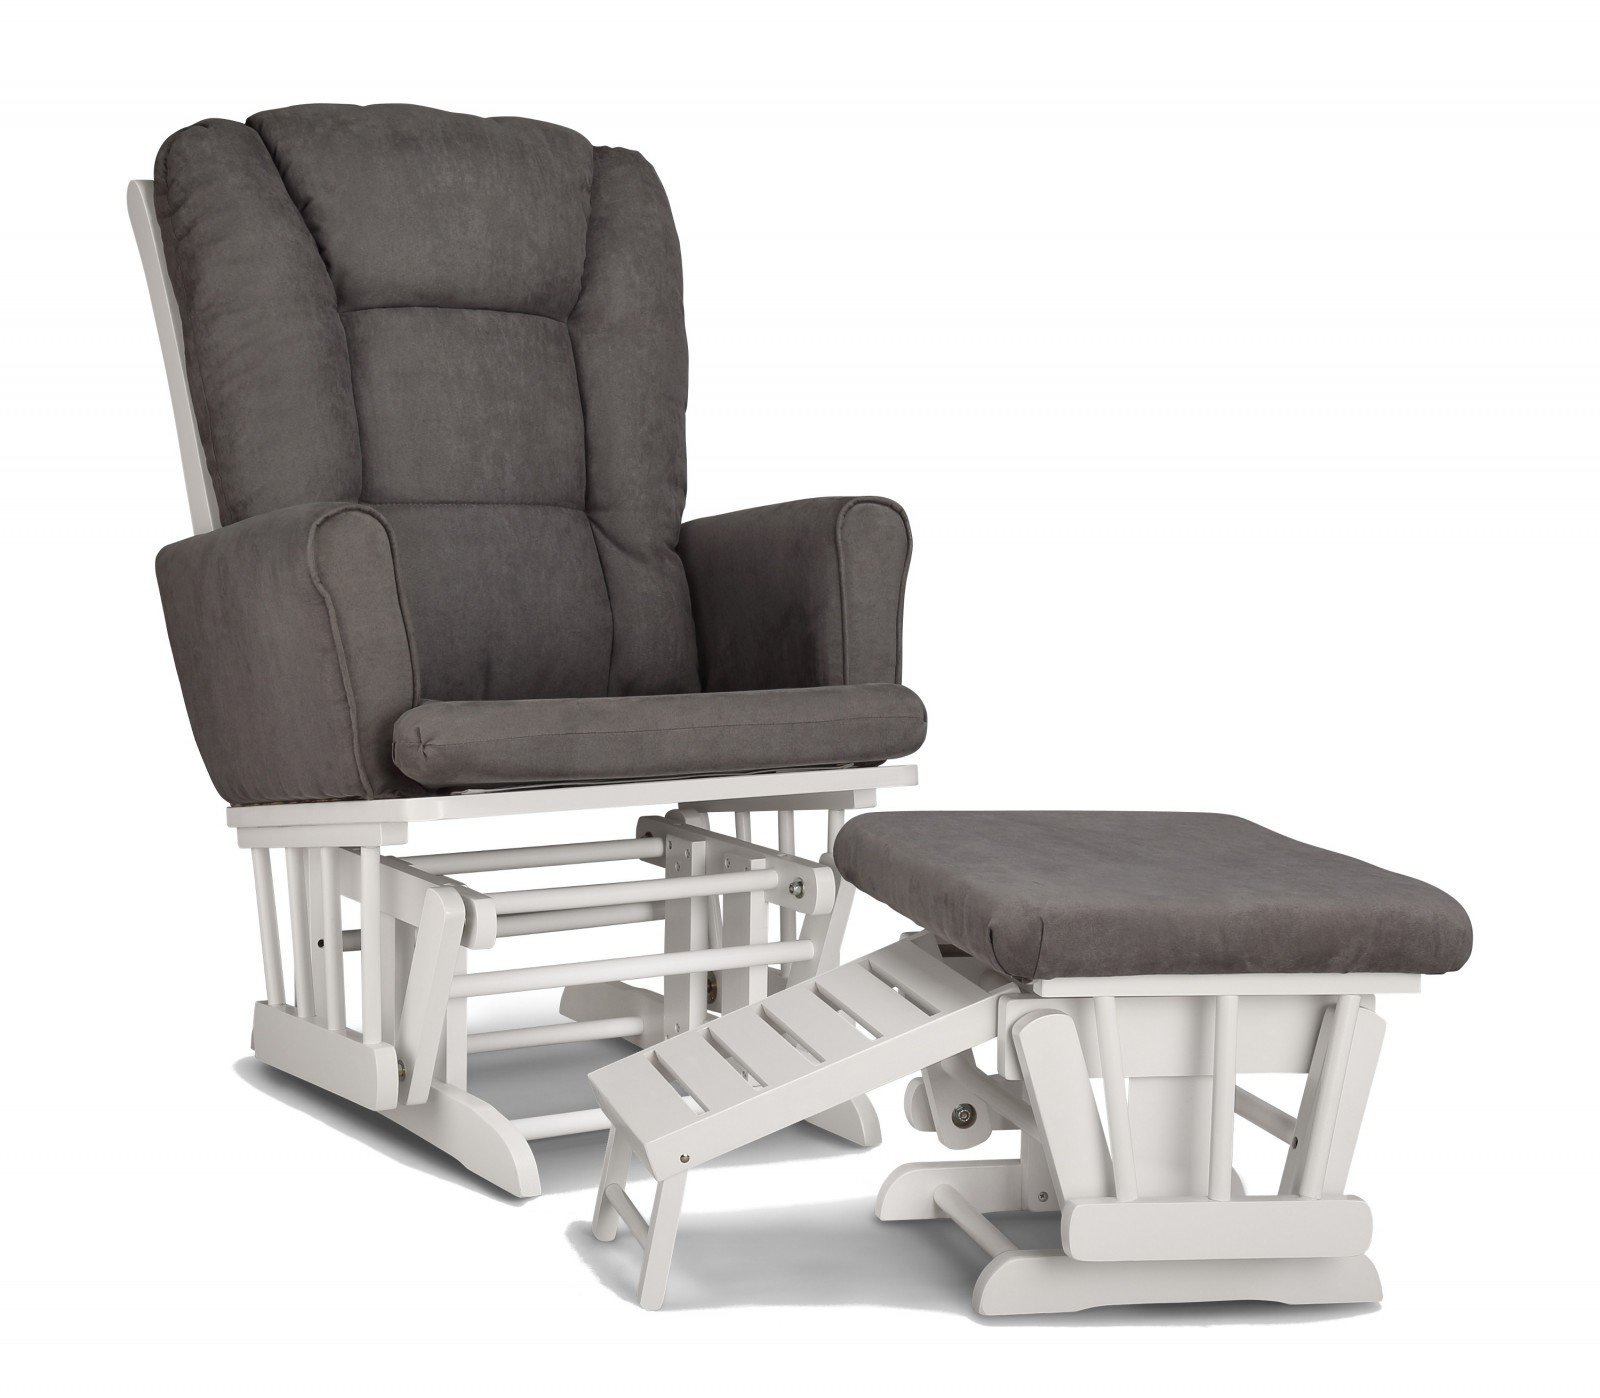 Nursing glider chair from kmart